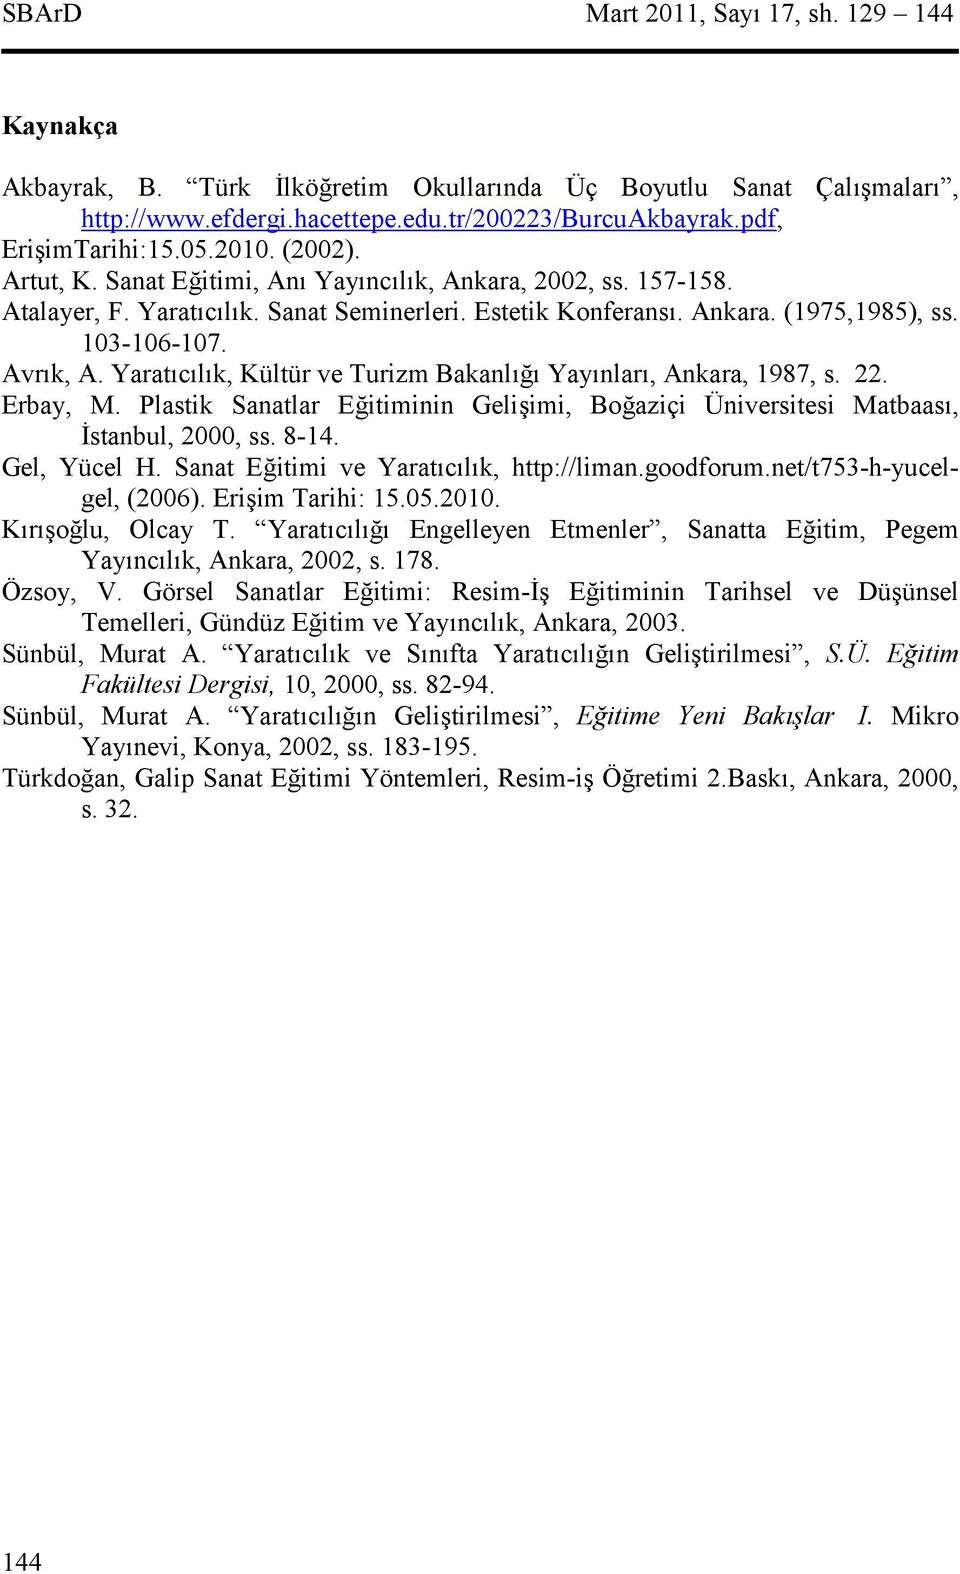 Yaratclk, Kültür ve Turizm Bakanl Yaynlar, Ankara, 1987, s. 22. Erbay, M. Plastik Sanatlar Eitiminin Geliimi, Boaziçi Üniversitesi Matbaas, 'stanbul, 2000, ss. 8-14. Gel, Yücel H.